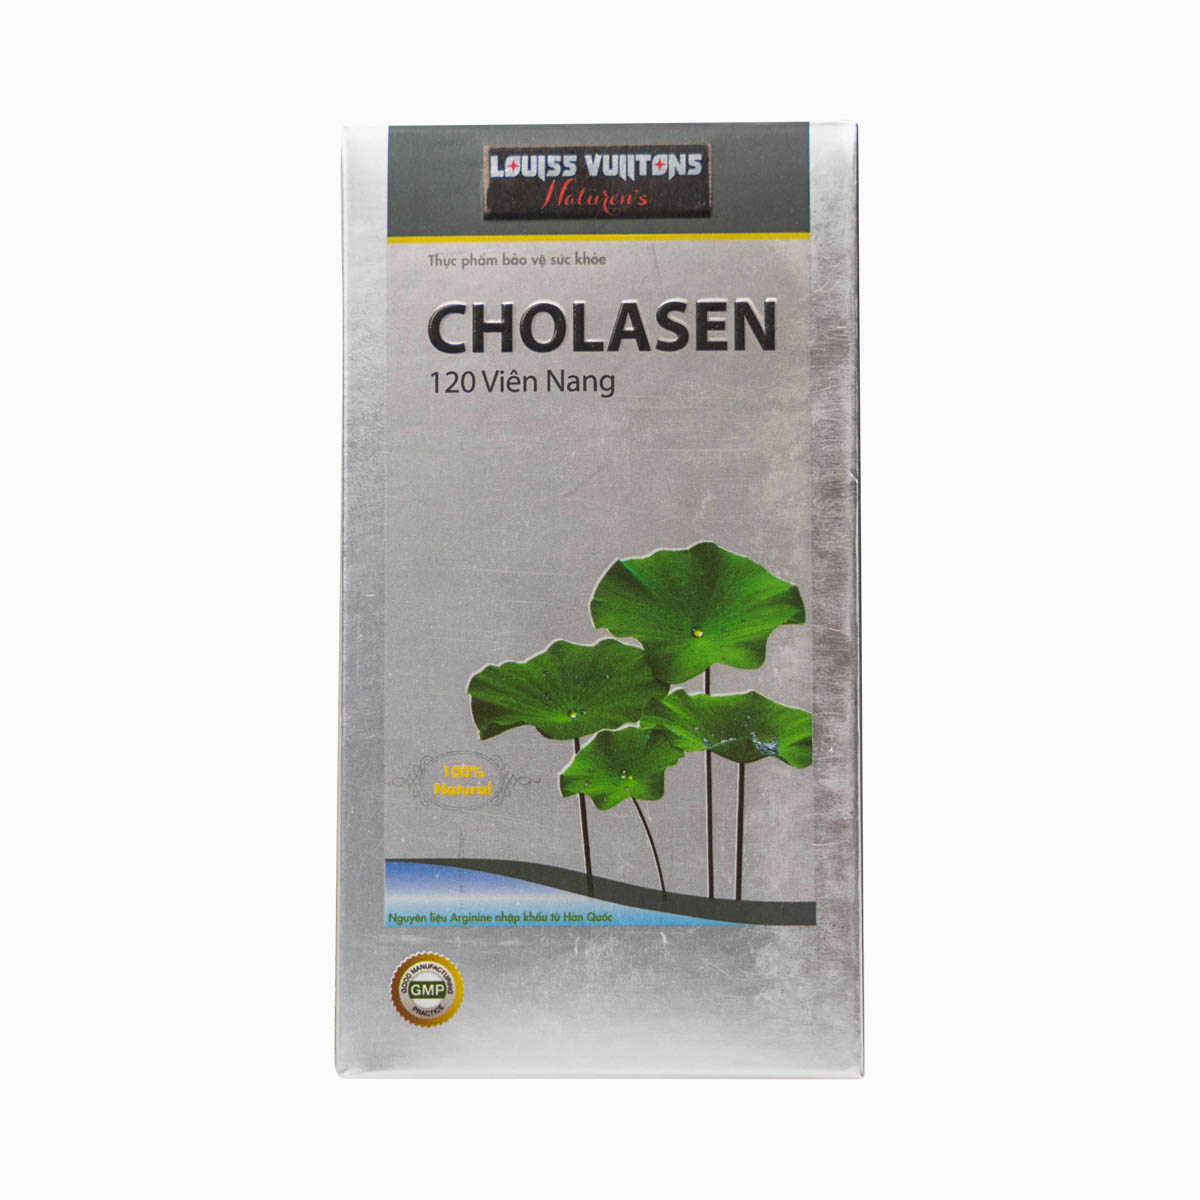 Cholasen - Hỗ trợ giảm cholesterol trong máu